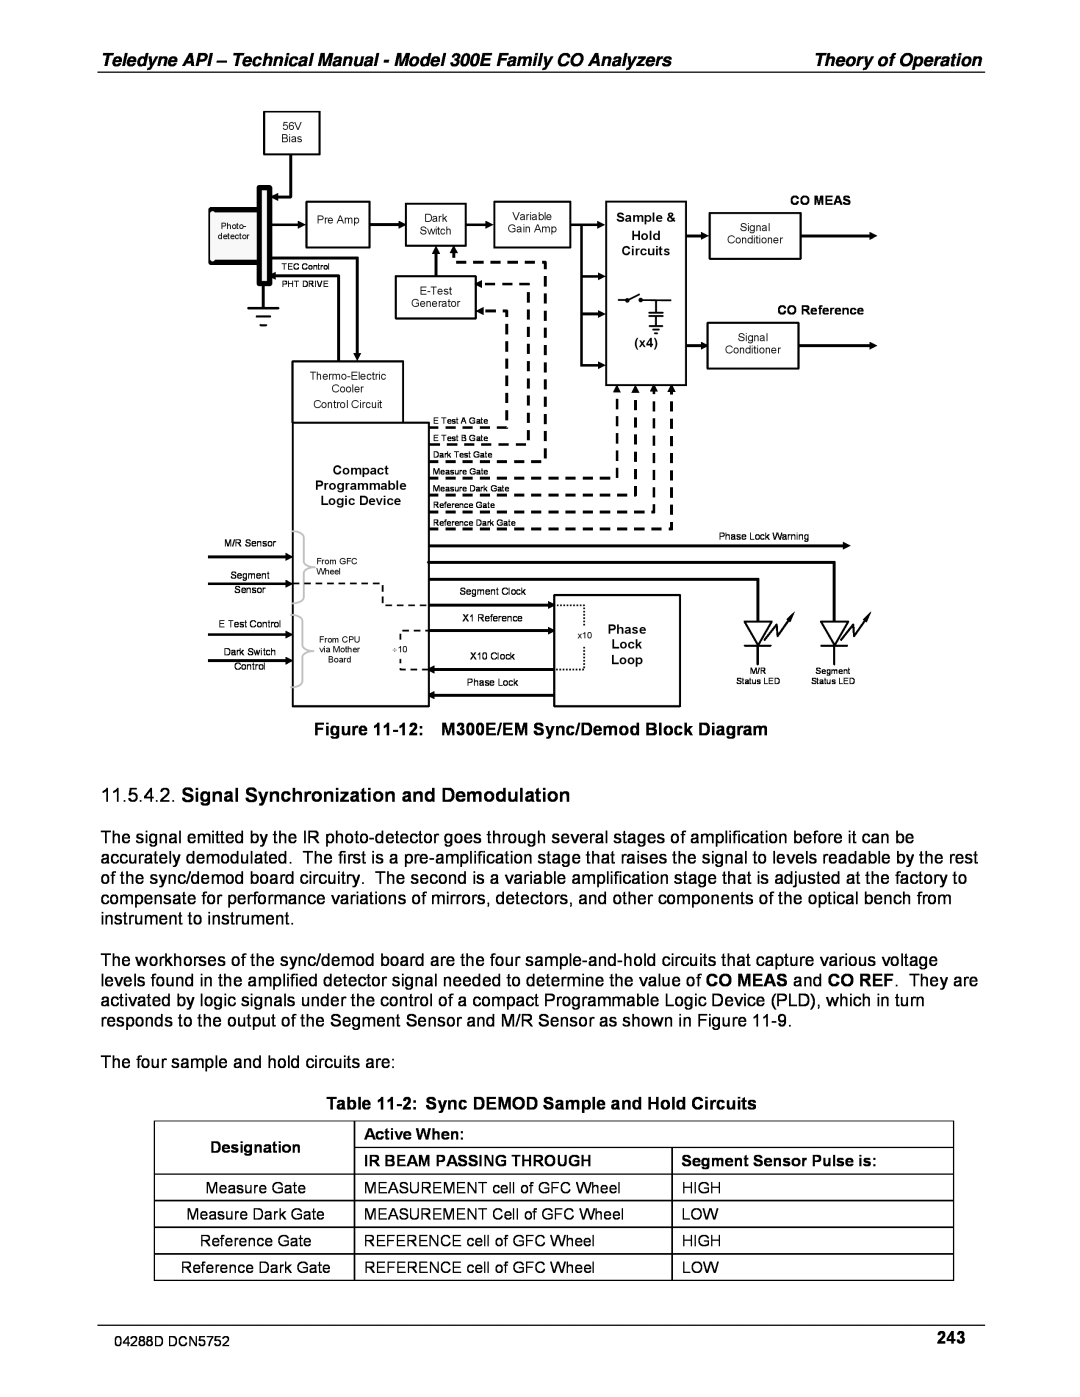 Teledyne M300EM operation manual Signal Synchronization and Demodulation, Figure, M300E/EM Sync/Demod Block Diagram 